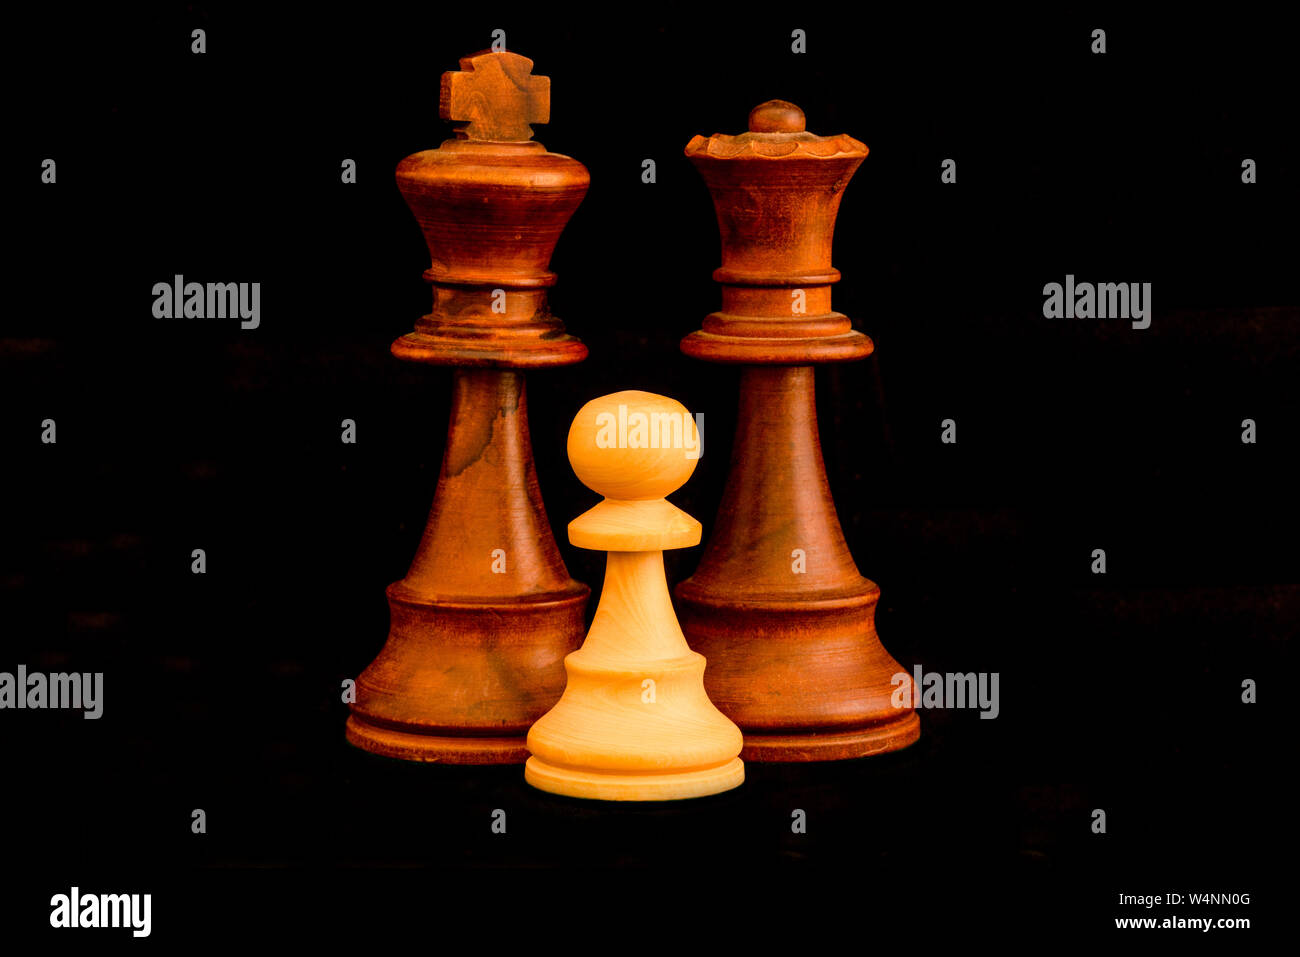 Re nero e la regina con la pedina bianca famiglia come interracial adozione del concetto. Standard del gioco degli scacchi pezzi di legno su sfondo nero Foto Stock